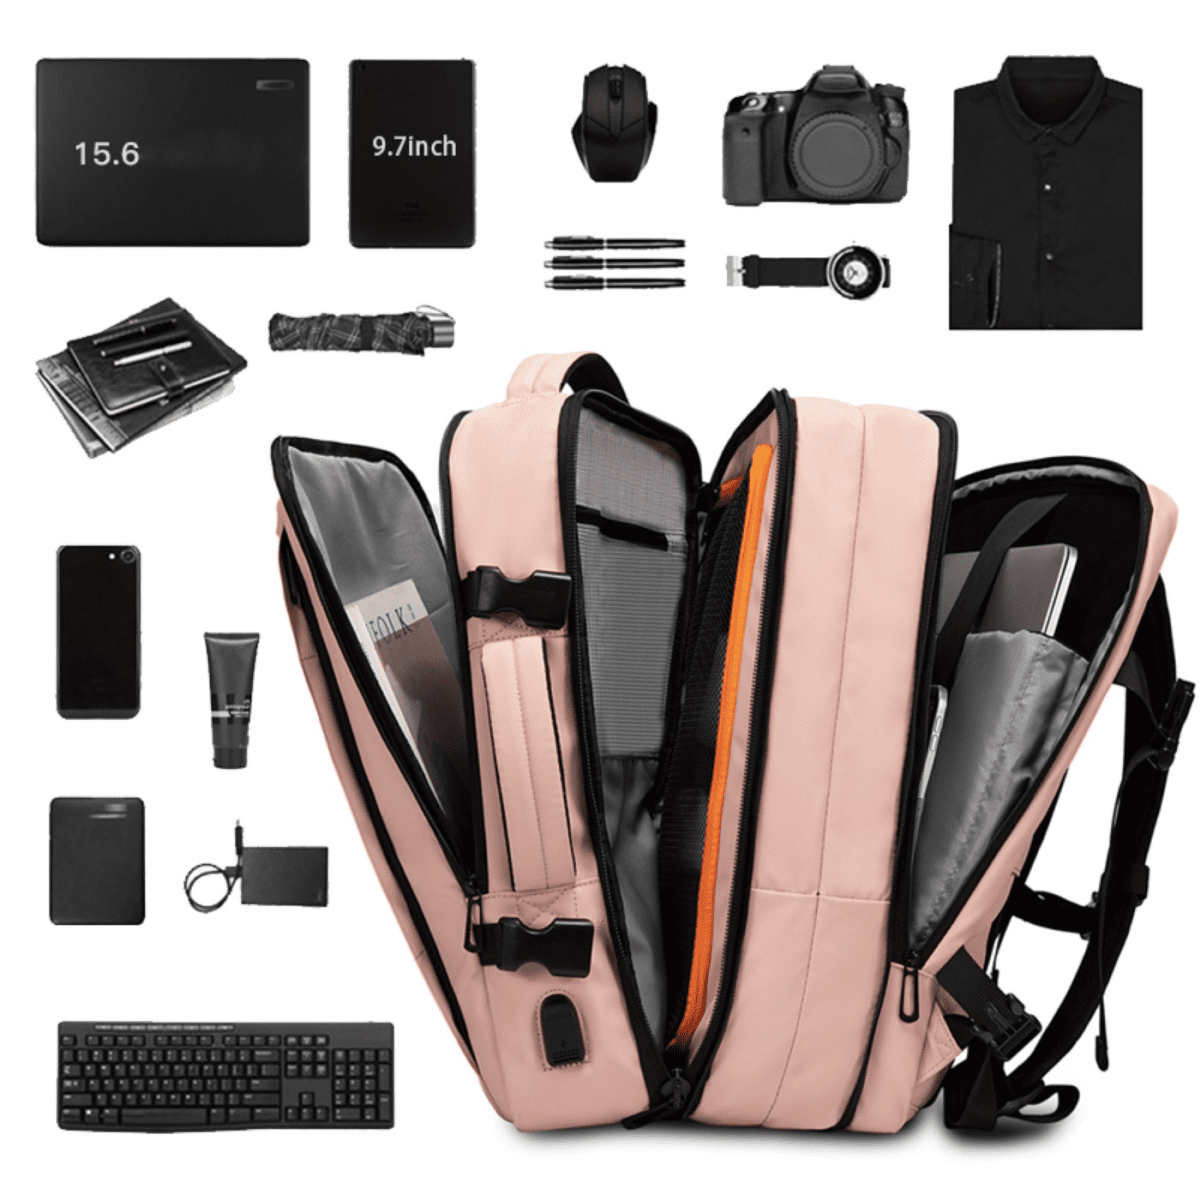 1. Ένα ροζ σακίδιο με φορητό υπολογιστή, κάμερα και άλλα αντικείμενα. 2. Ροζ σακίδιο πλάτης με laptop, κάμερα, και διάφορα αντικείμενα. 3. Εικόνα ενός ροζ σακιδίου που περιέχει φορητό υπολογιστή, κάμερα και άλλα αντικείμενα.